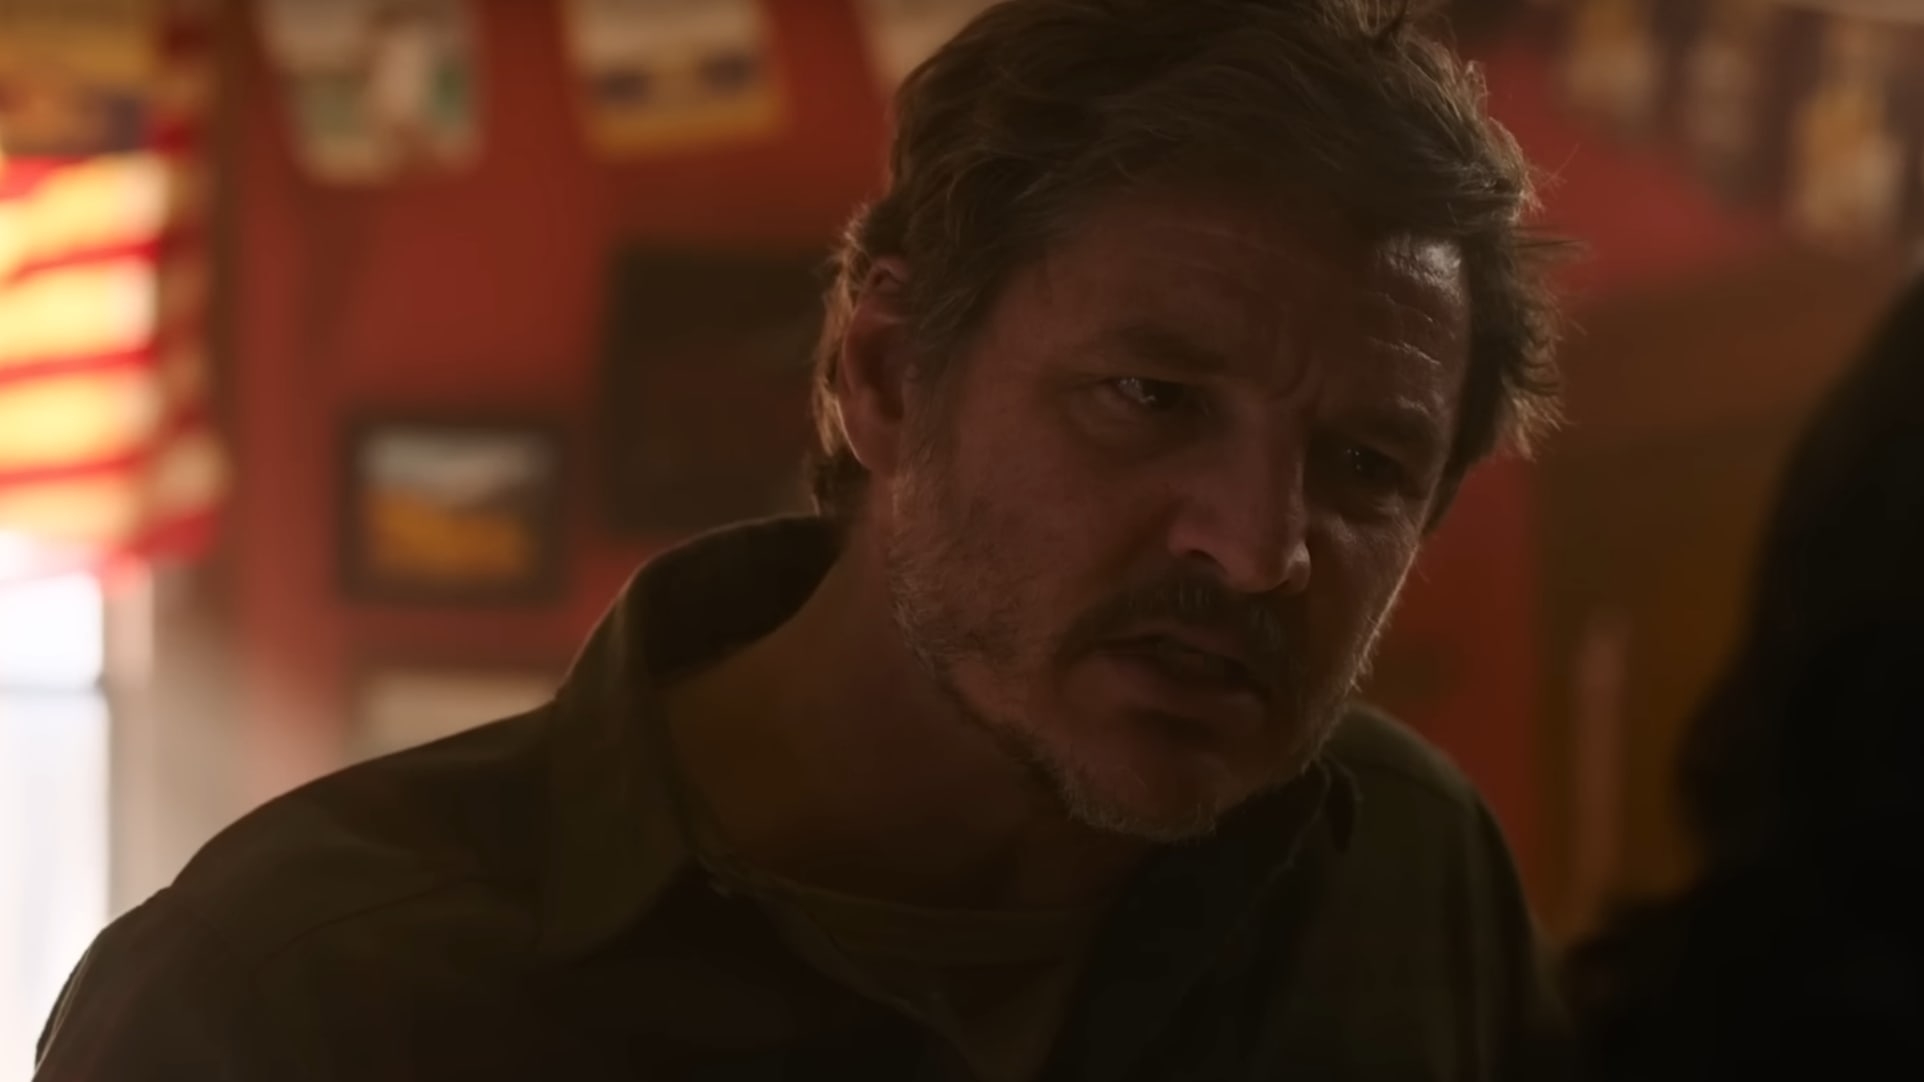 The Last of Us: Joel encontra Tommy em novo trailer do episódio 6